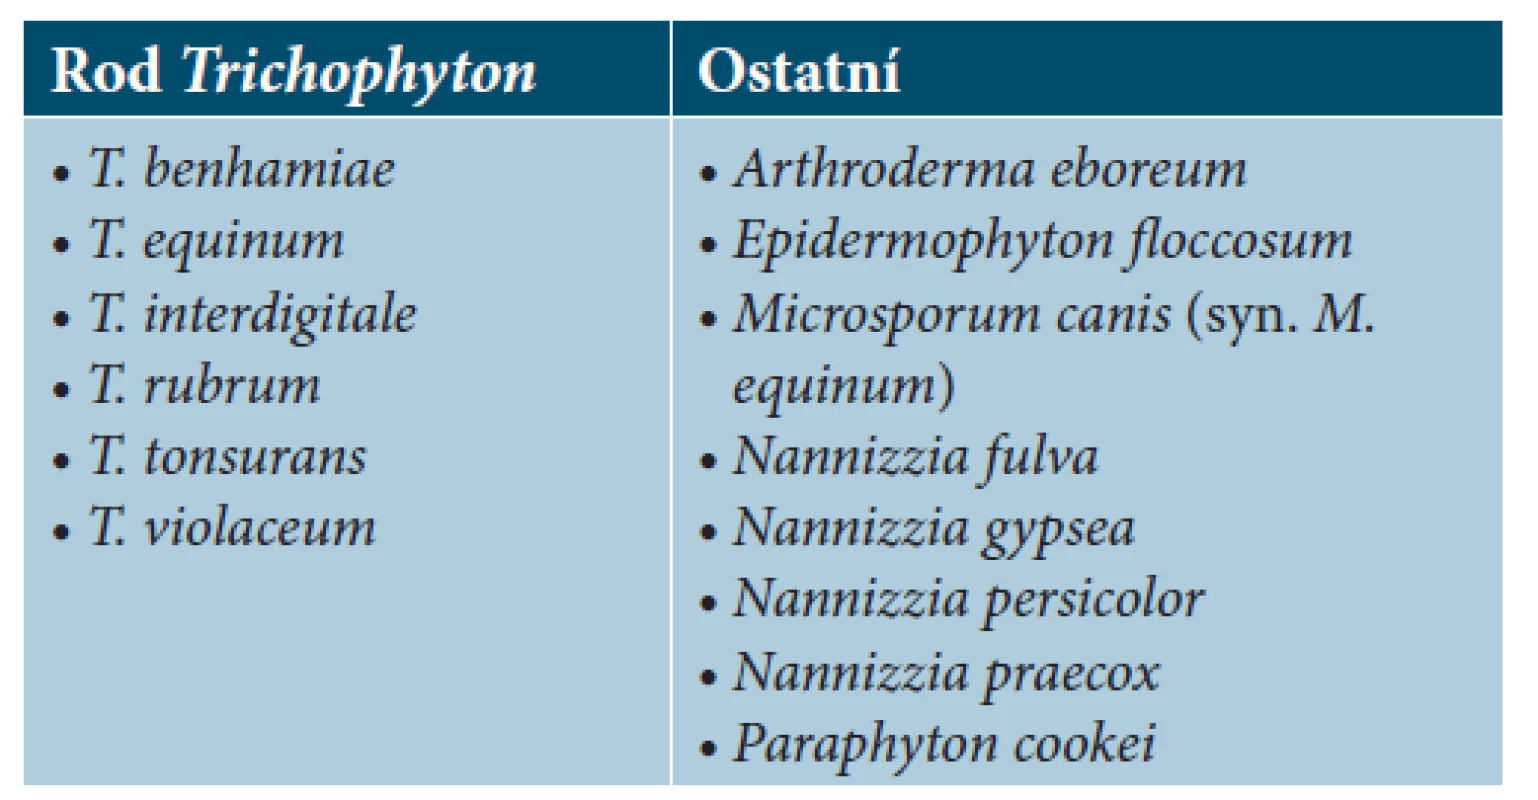 Seznam druhů dermatofytů, jejichž spektra jsou
zastoupena v databázi MALDI Biotyper Filamentou fungi
library 1.0.